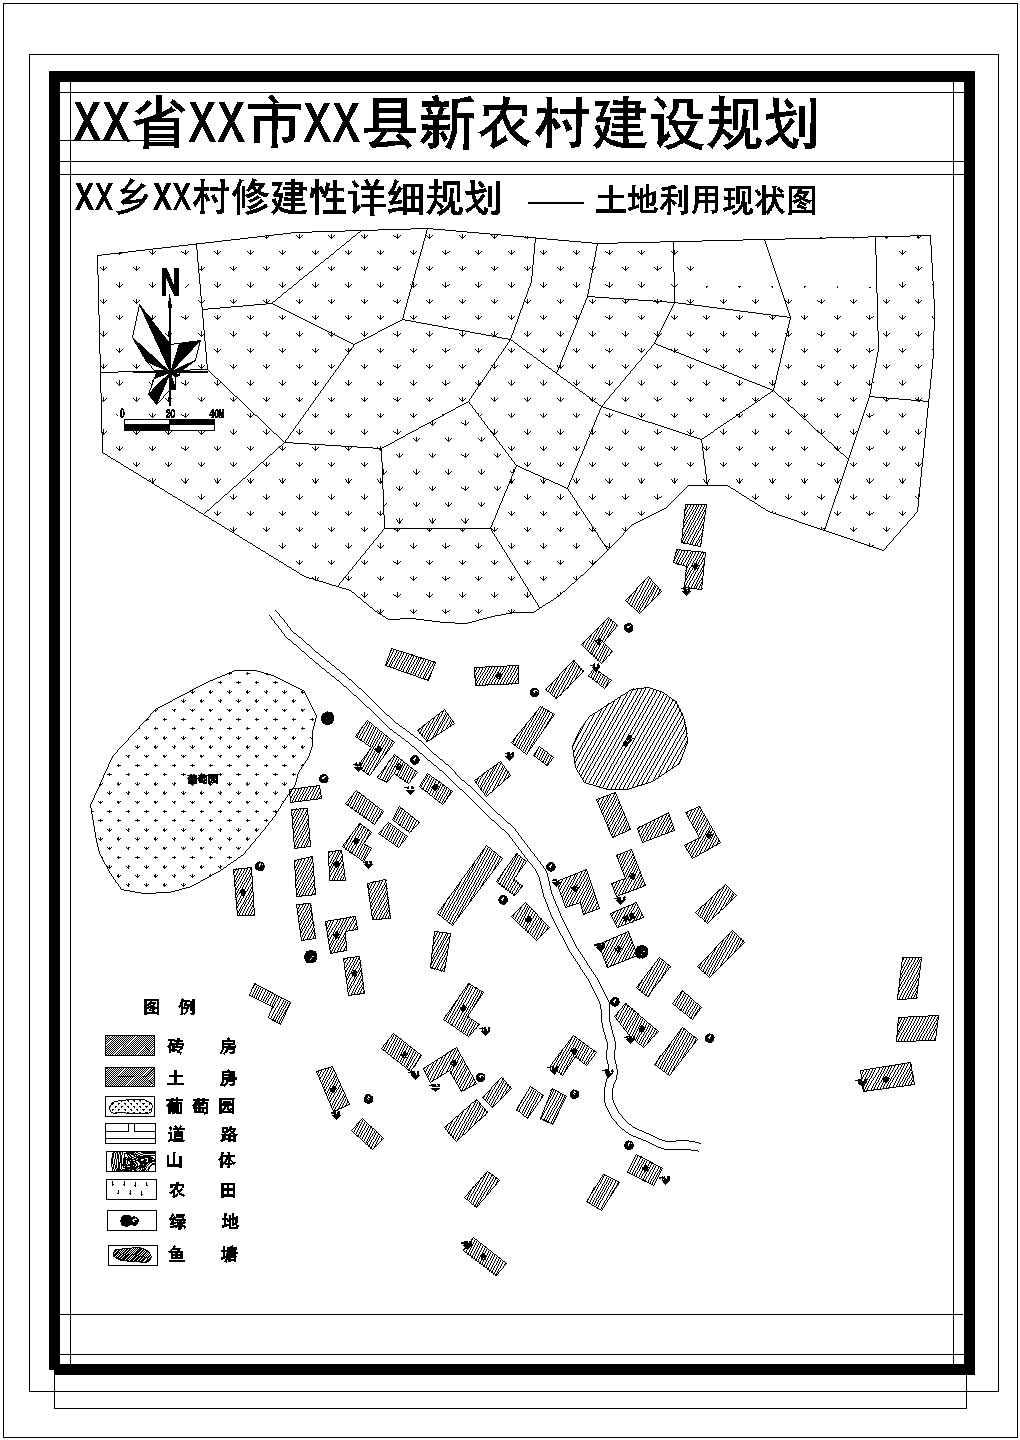 安徽省黄山市某村修建性详细规划CAD图纸【含给排水管线图，景观规划图】